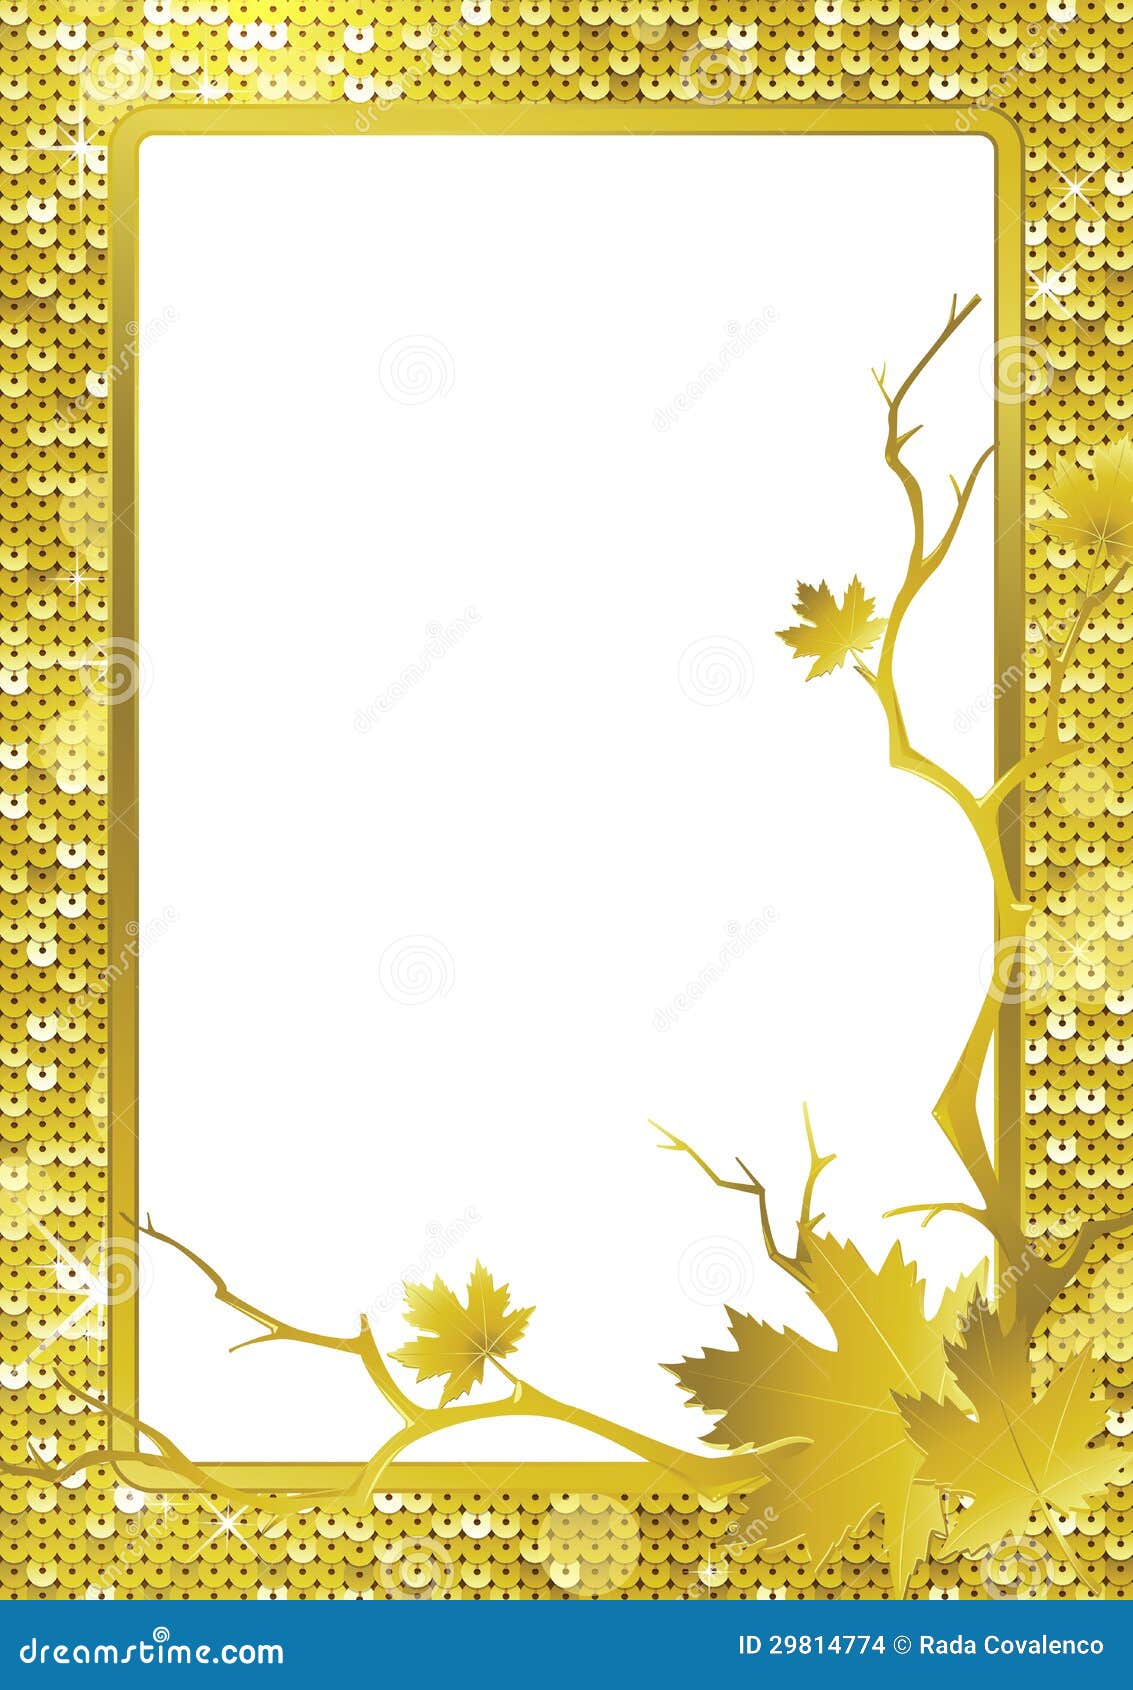 Golden frame stock vector. Illustration of ribbon, shape - 29814774